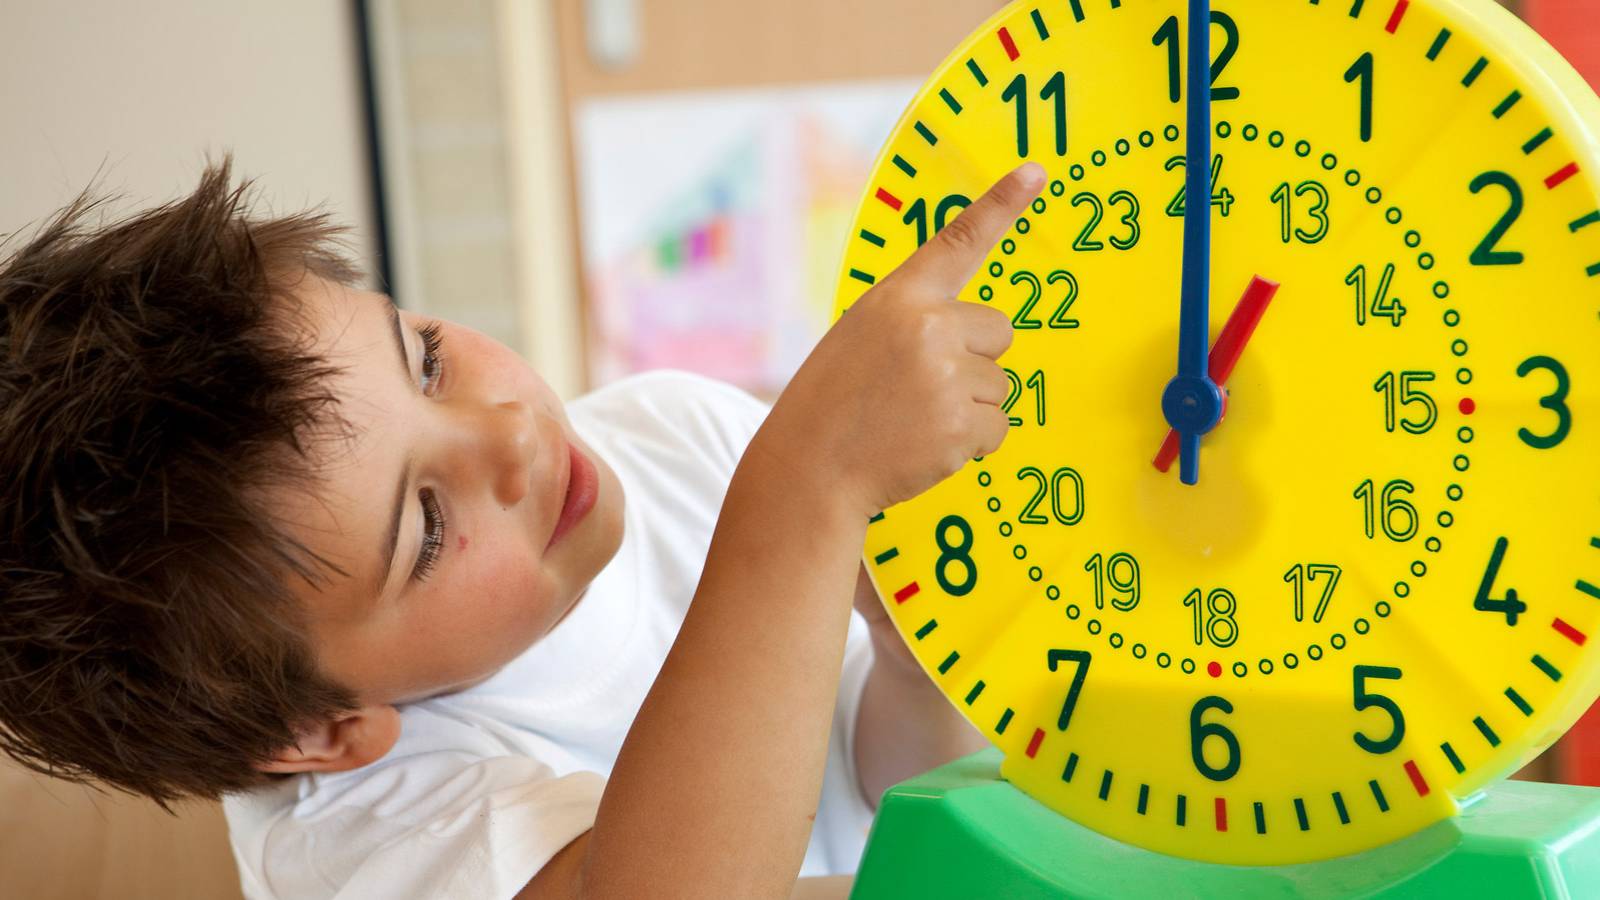 Kid pointing at a clock